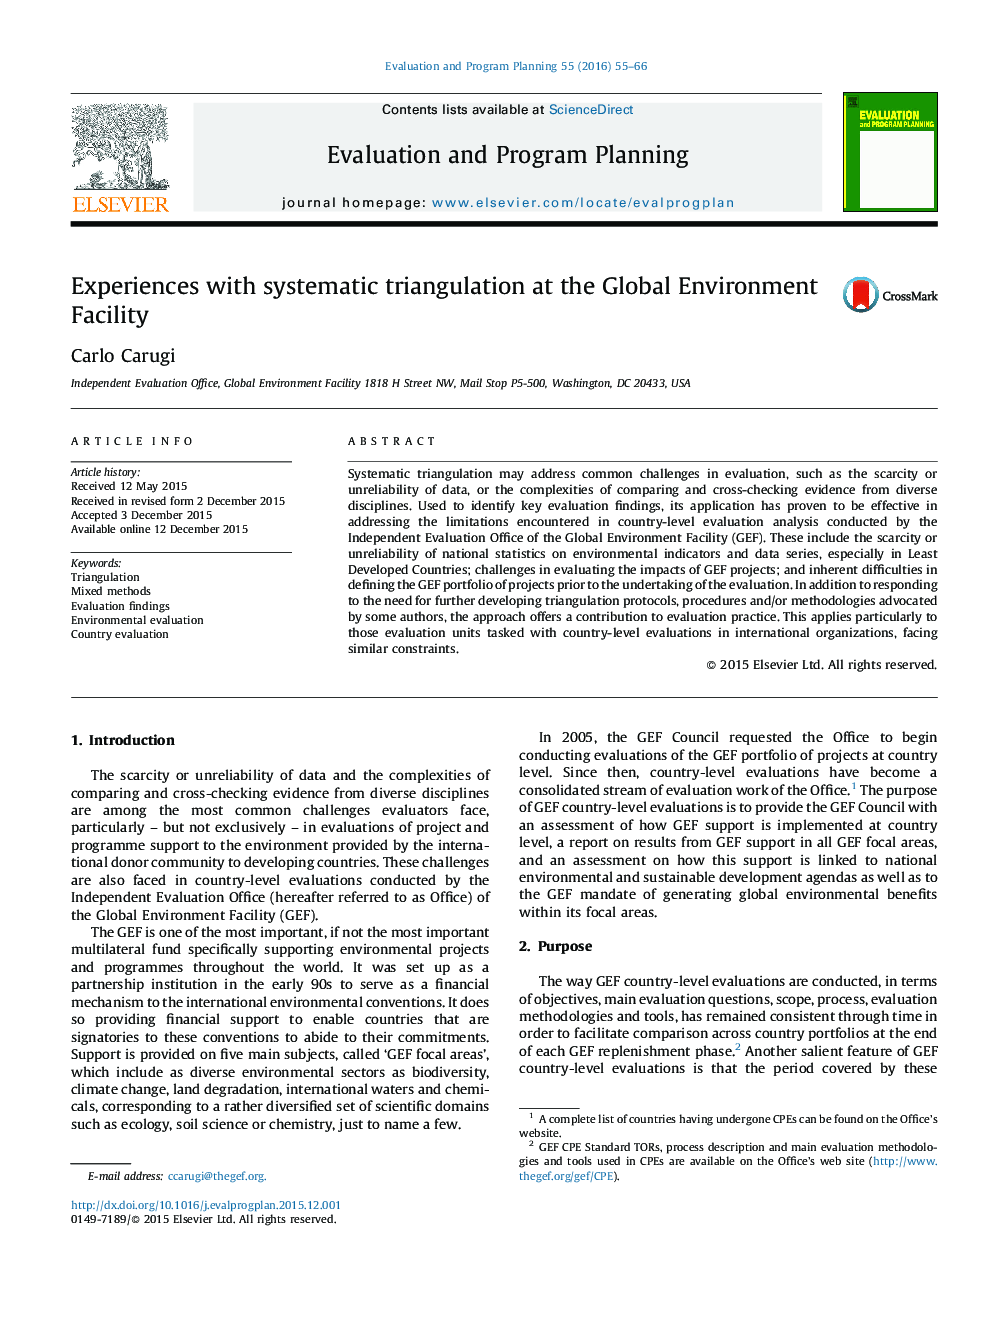 تجارب با سهگانگی سیستماتیک در تسهیلات محیط زیست جهانی 